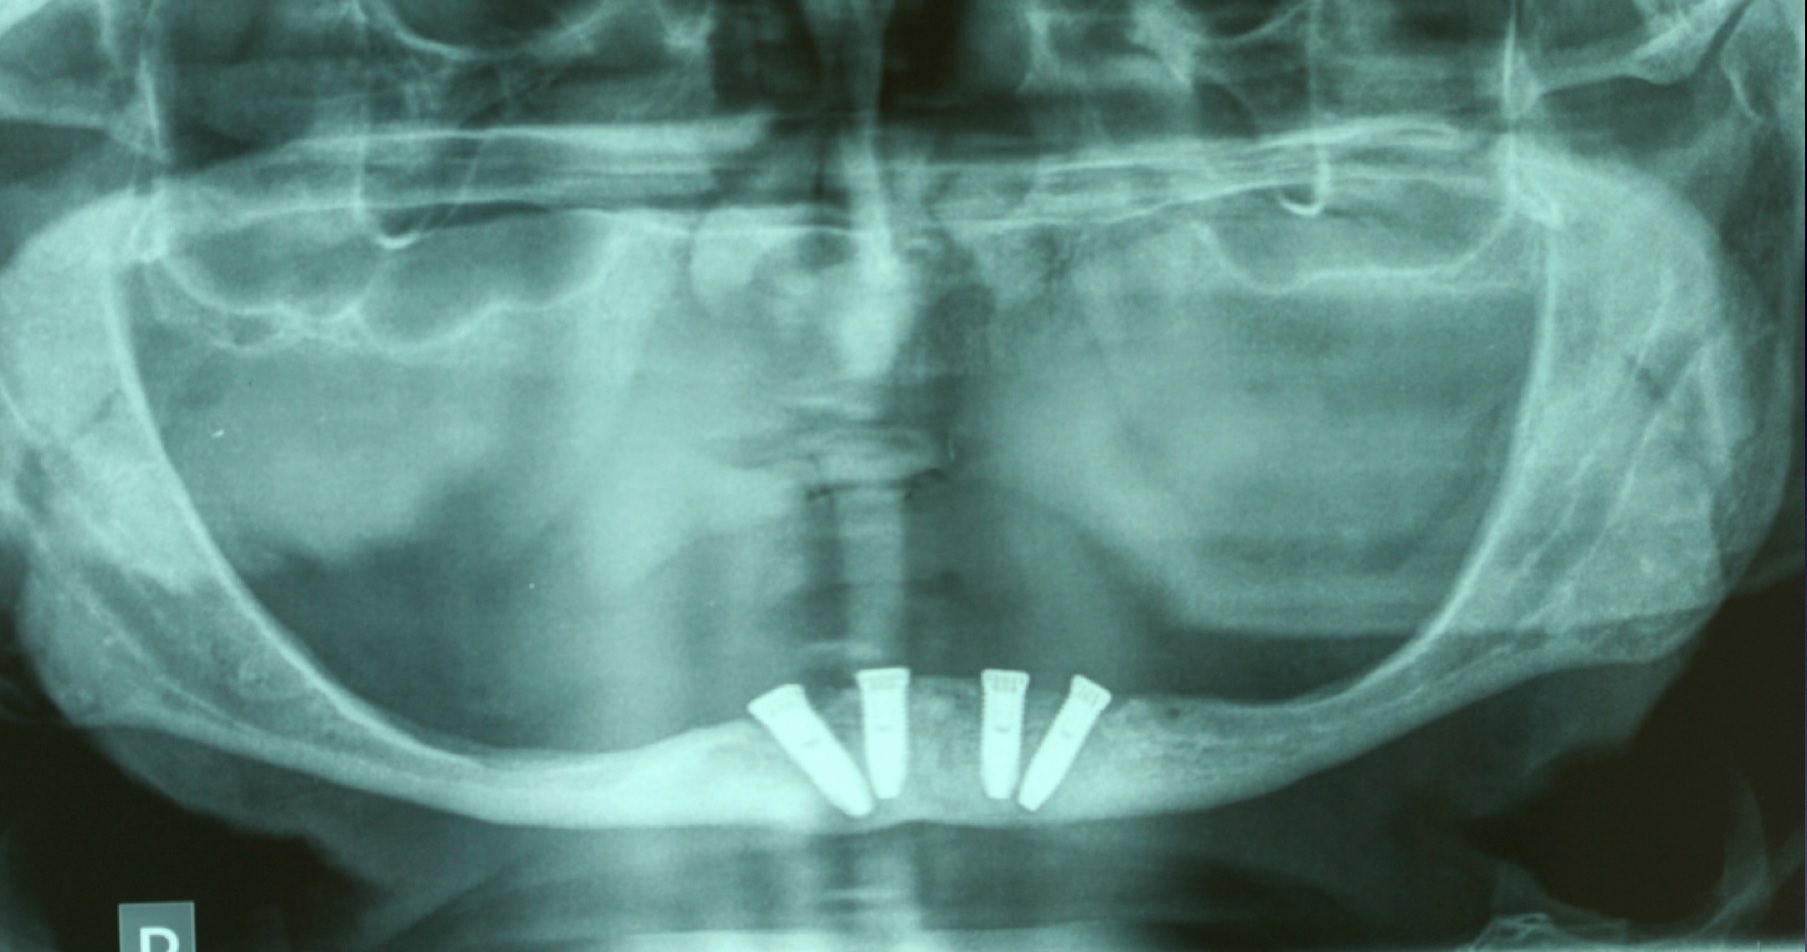 Fot.2: Założone 4 implanty w systemie All-on-4